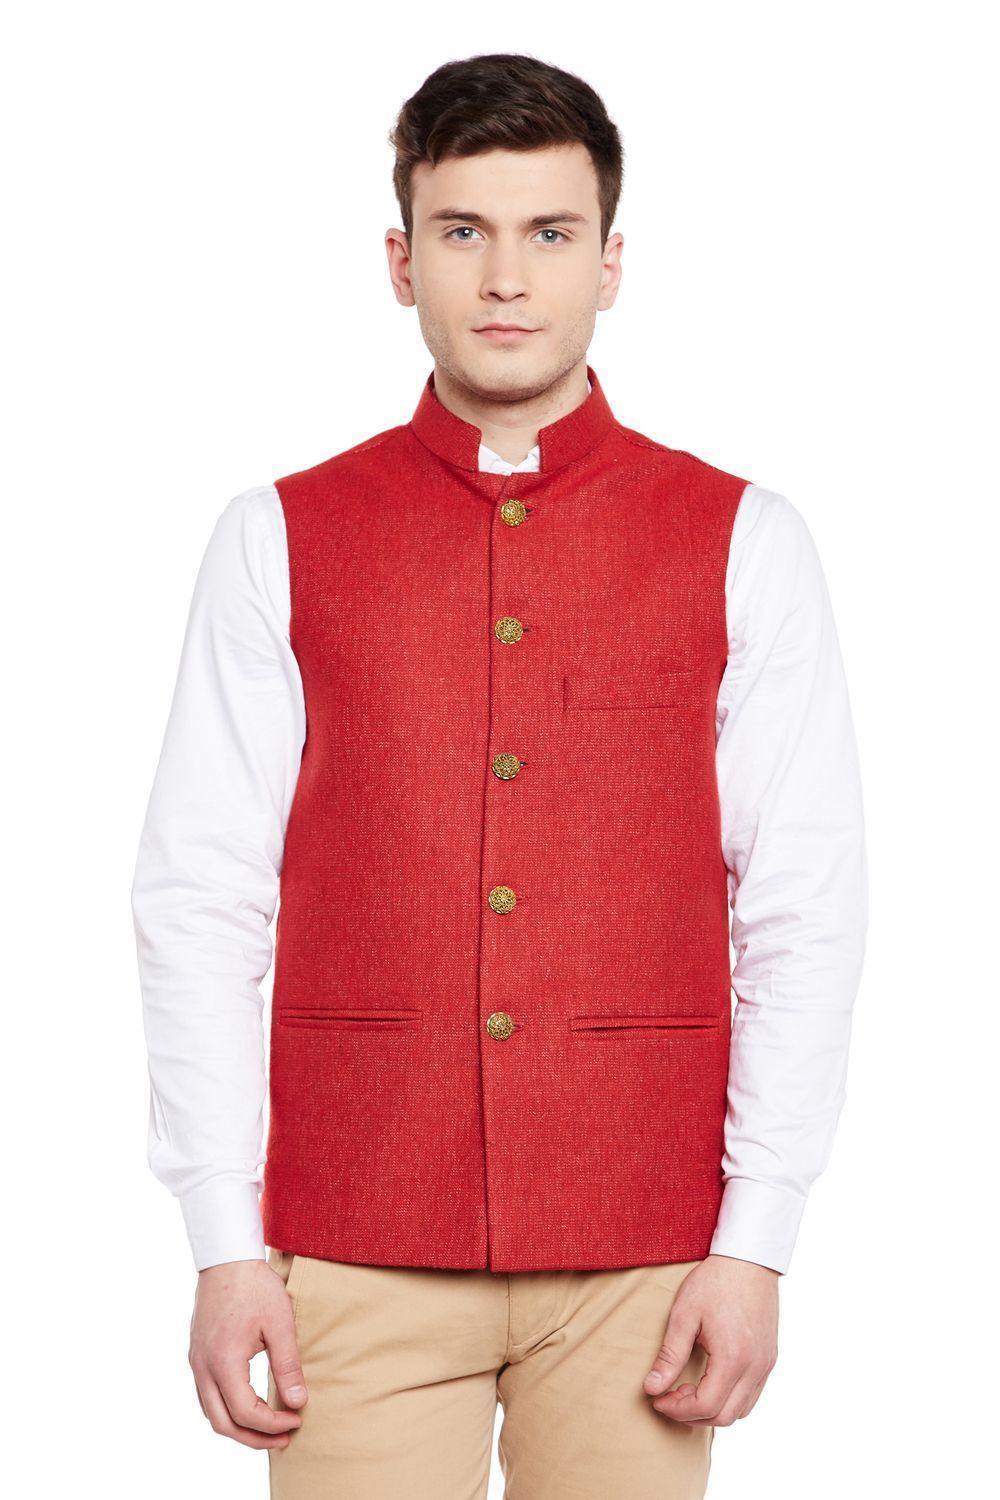 Tweed Red Nehru Jacket